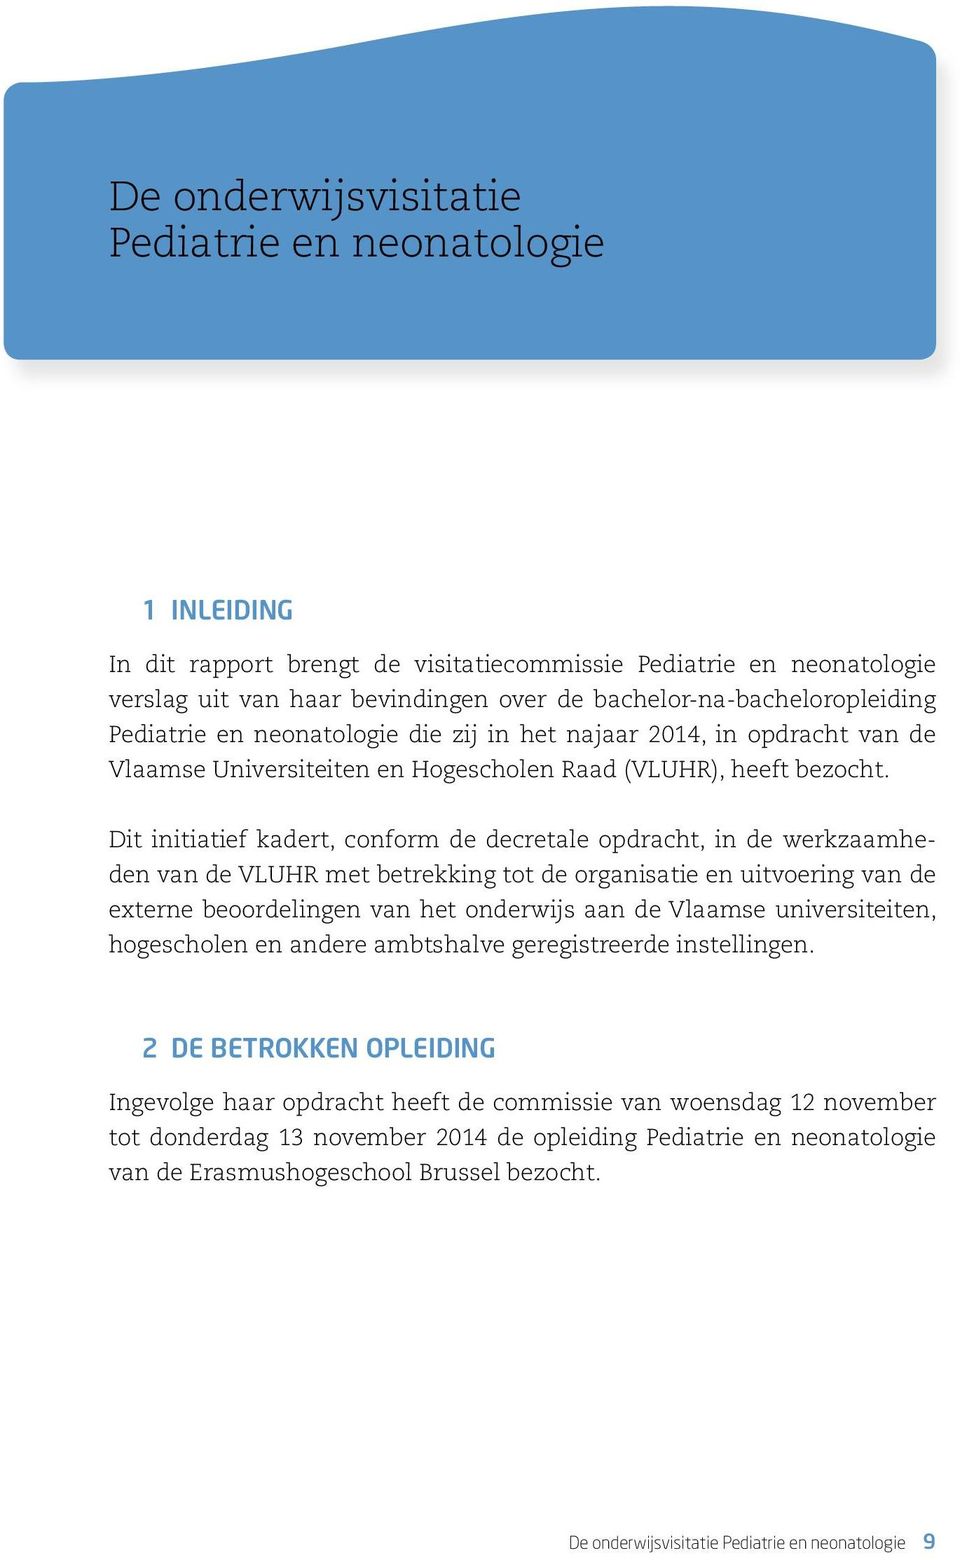 Dit initiatief kadert, conform de decretale opdracht, in de werkzaamheden van de VLUHR met betrekking tot de organisatie en uitvoering van de externe beoordelingen van het onderwijs aan de Vlaamse